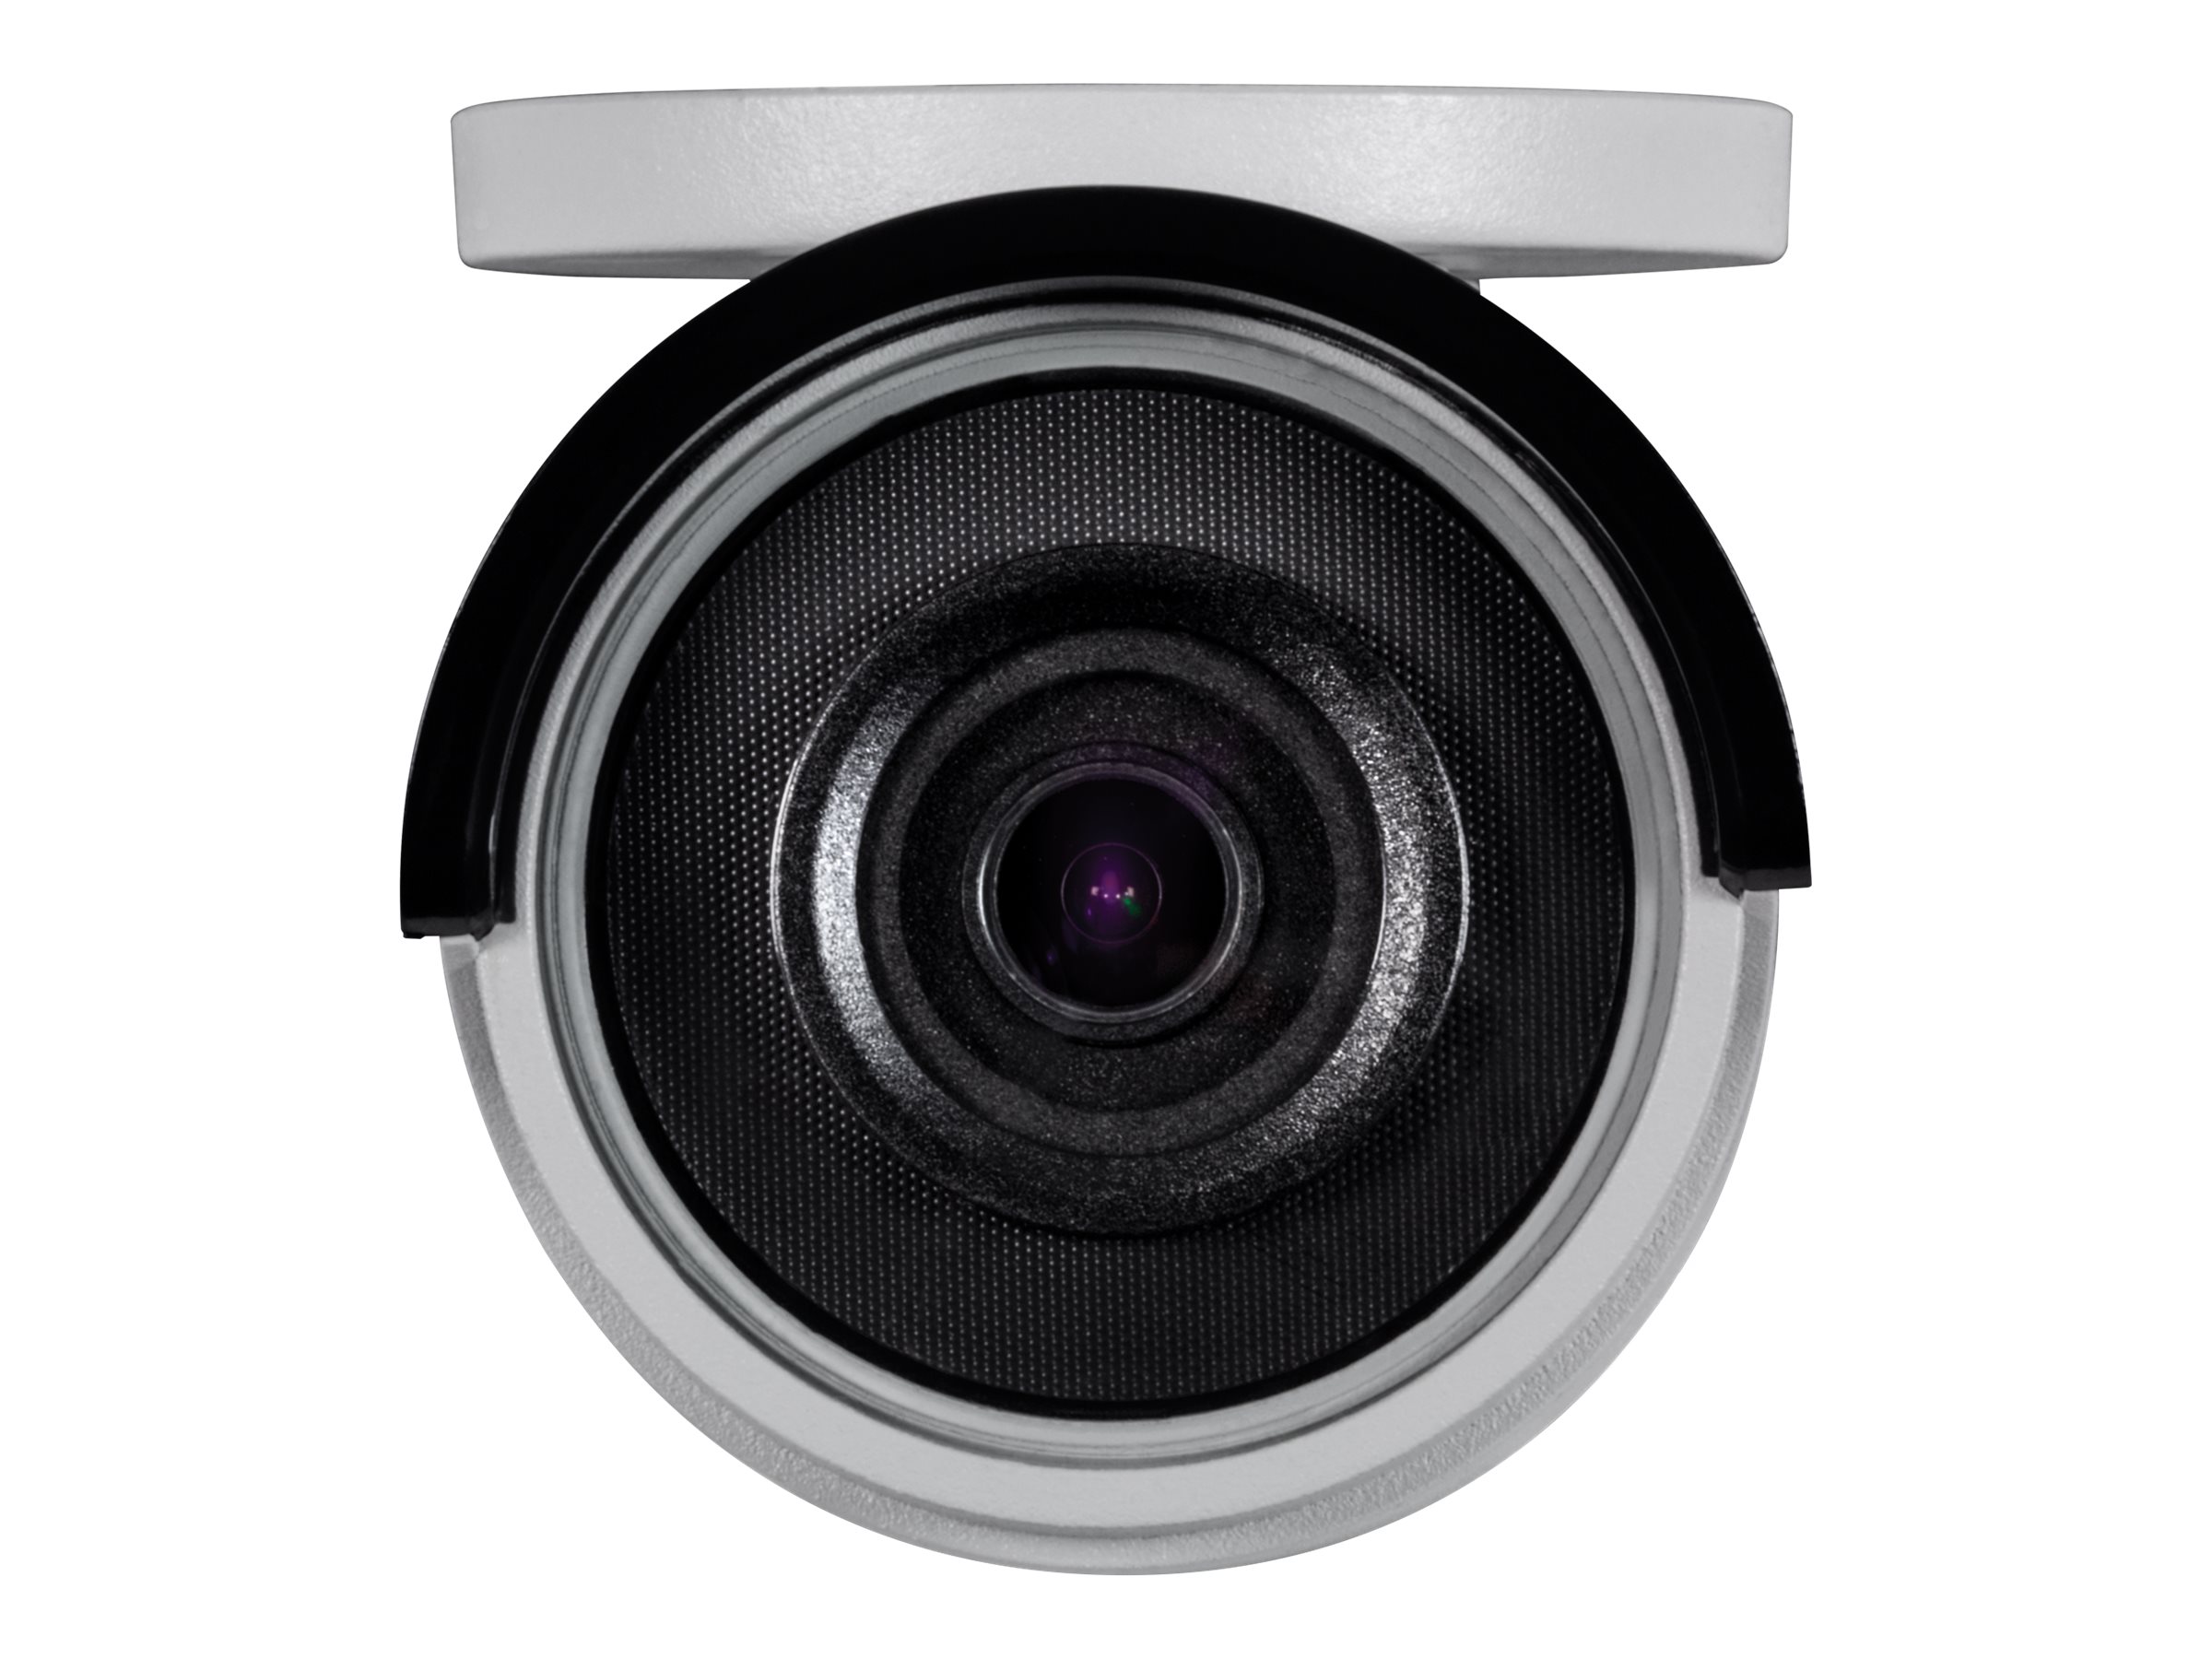 TRENDnet TV IP316PI - Network surveillance camera